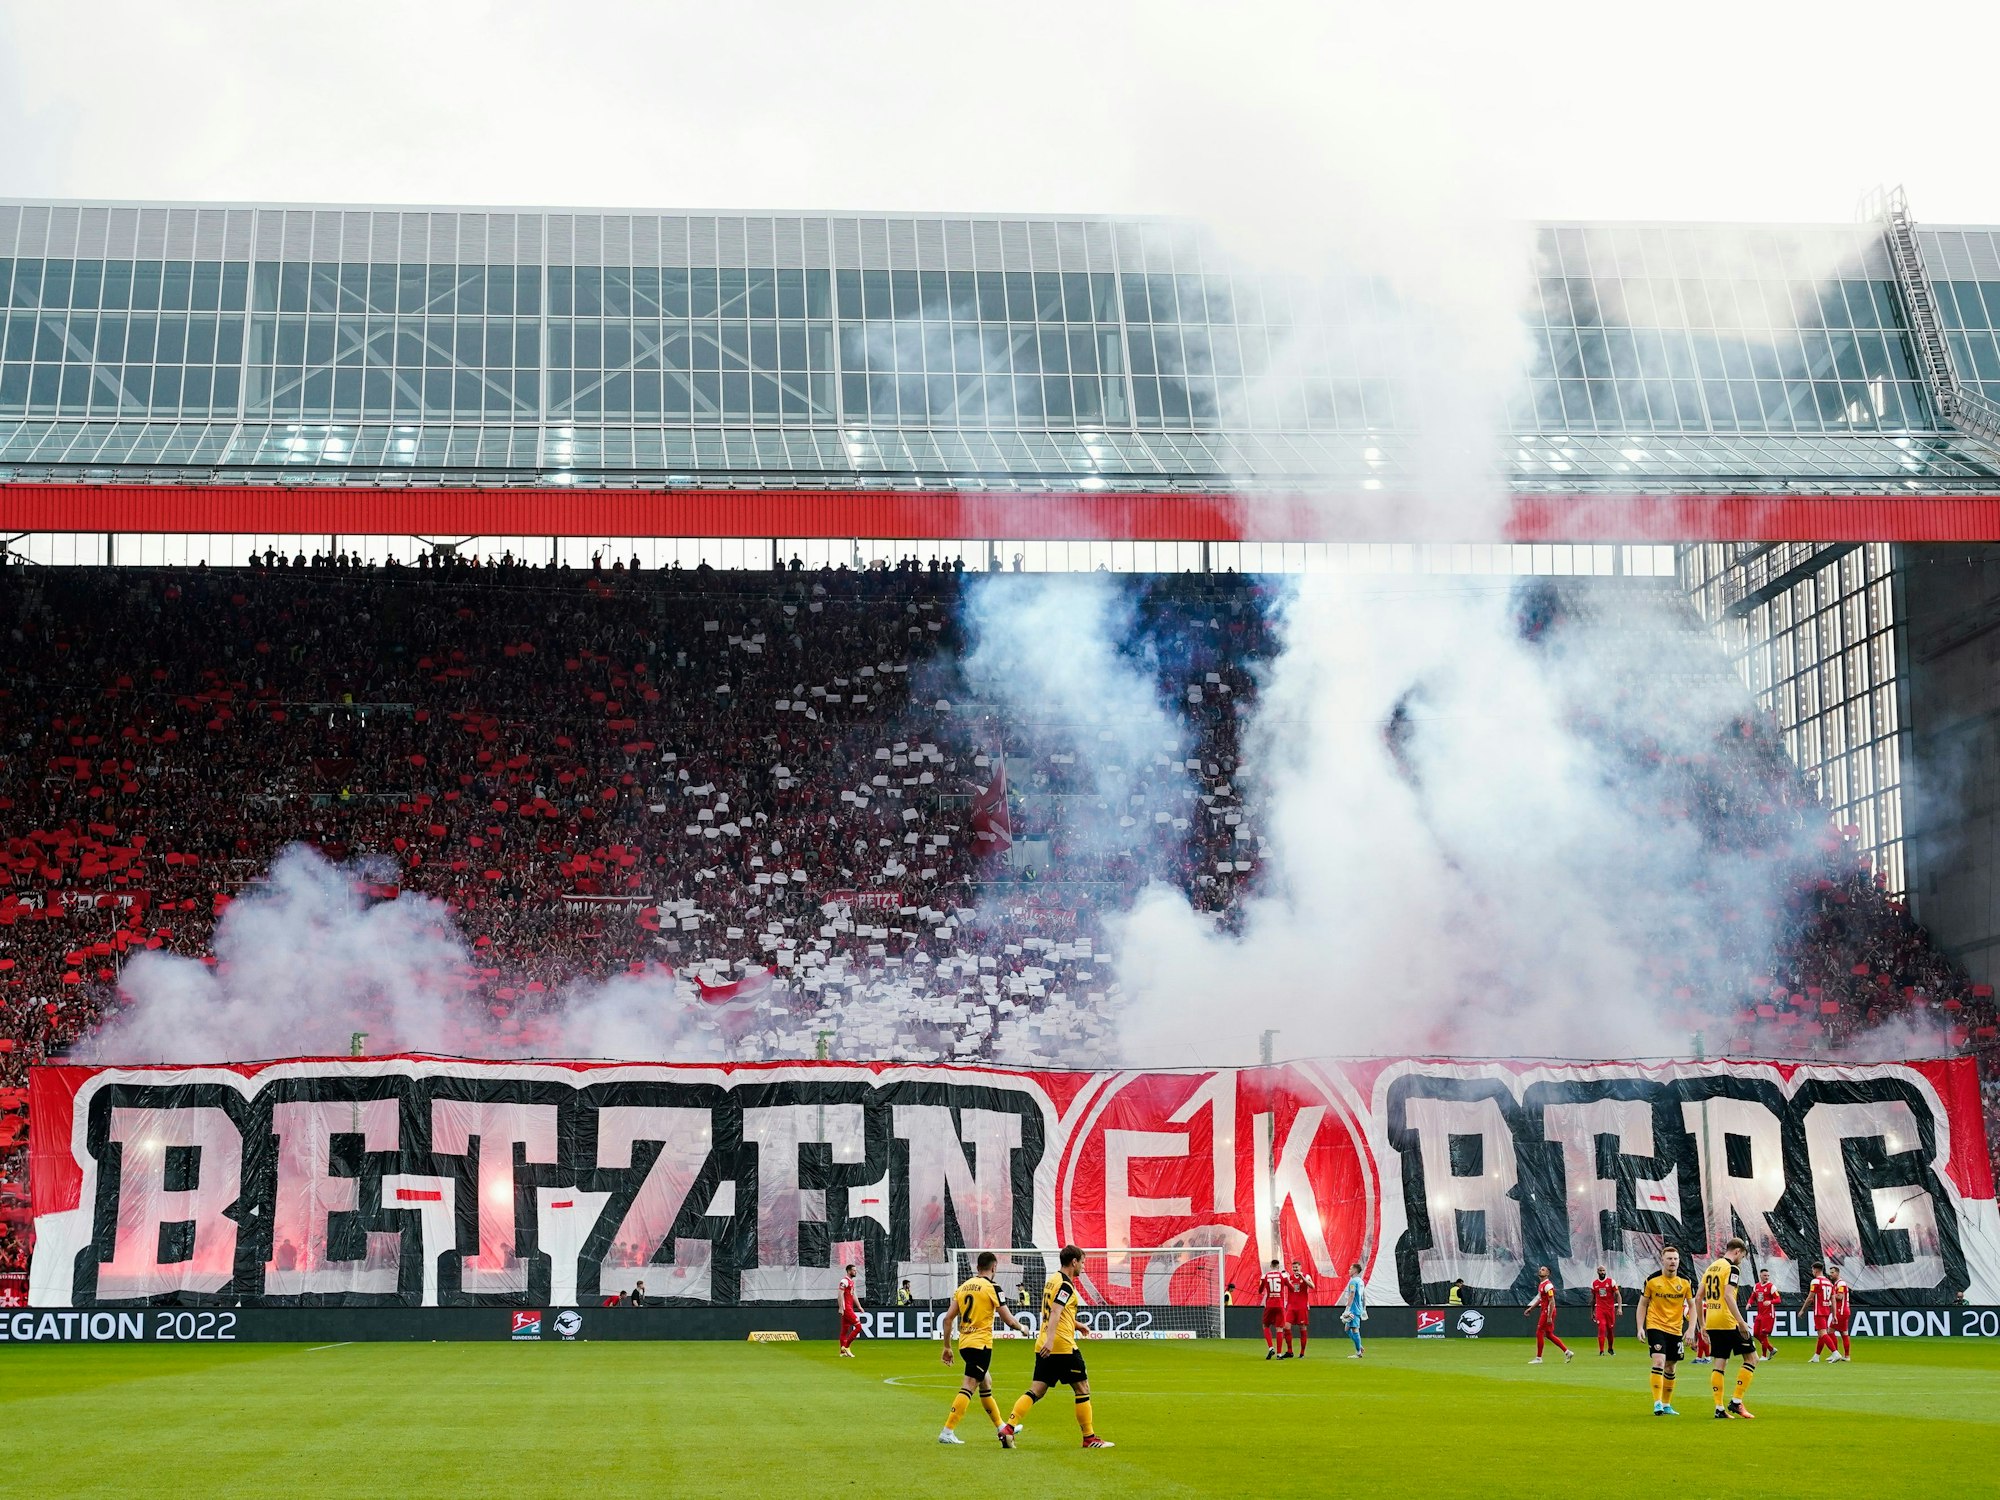 Kaiserslauterns Fans halten zu Spielbeginn ein Banner mit der Aufschrift „Betzenberg“ in die Höhe.